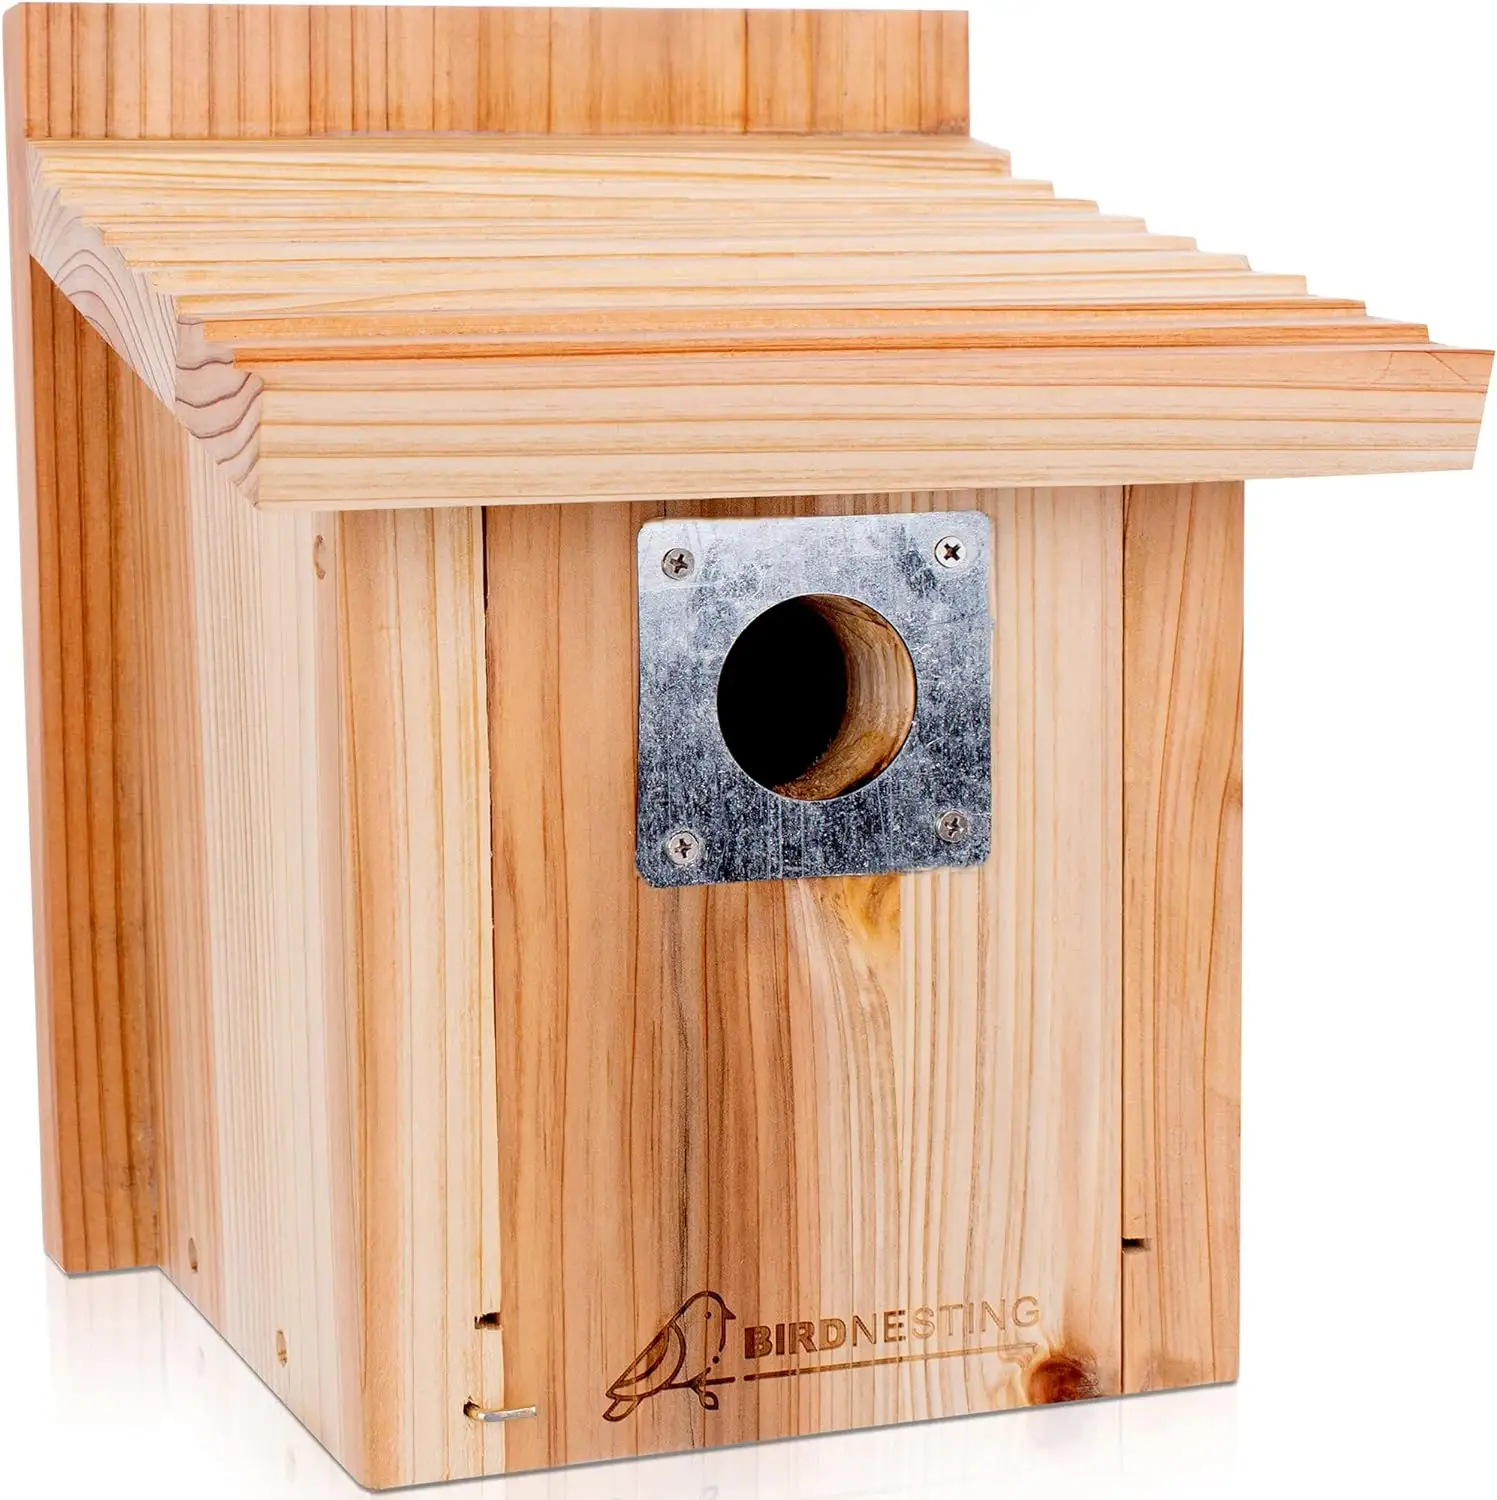 Caixa de nidificação resistente de madeira de abeto premium para pássaros, casa de madeira natural suspensa do lado de fora